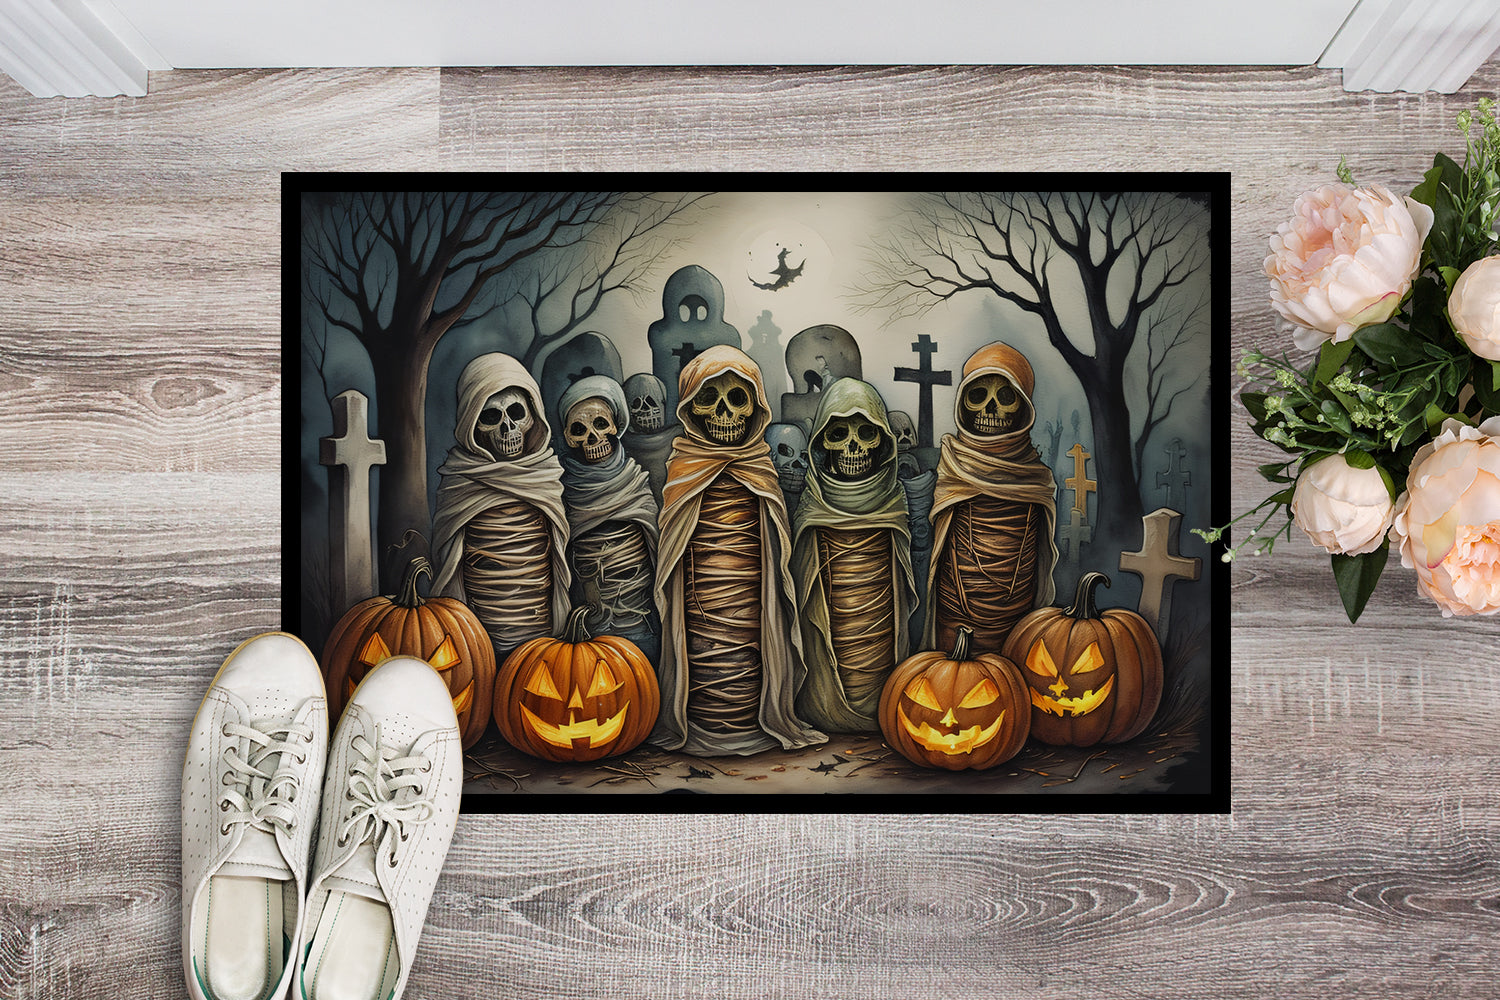 Buy this Mummies Spooky Halloween Doormat 18x27